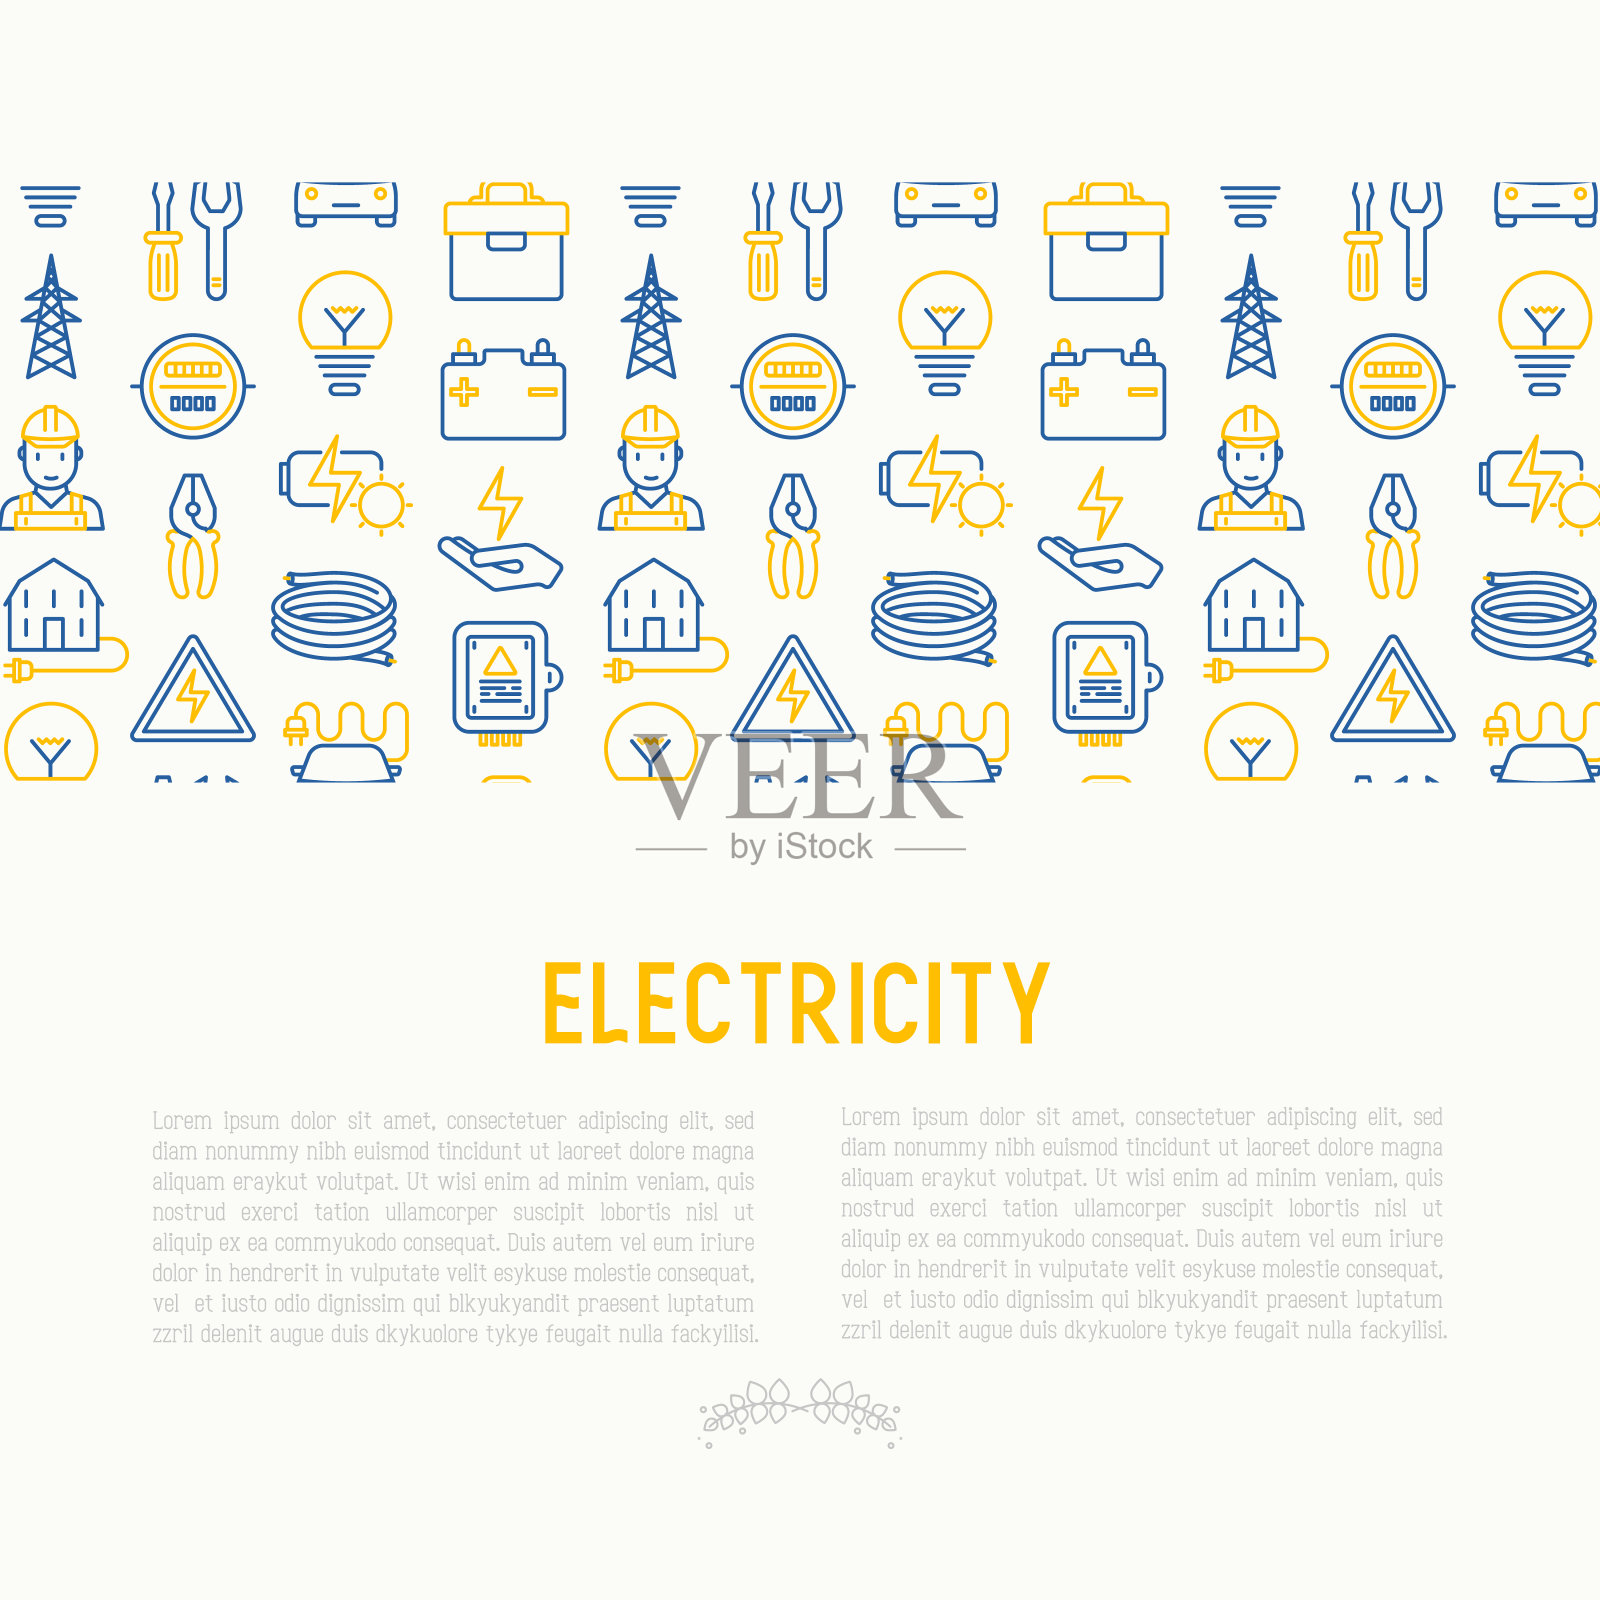 电学概念与细线图标:电工，灯泡，塔，工具箱，电缆，电动车，手，太阳能电池。矢量插图的旗帜，网页，印刷媒体。插画图片素材